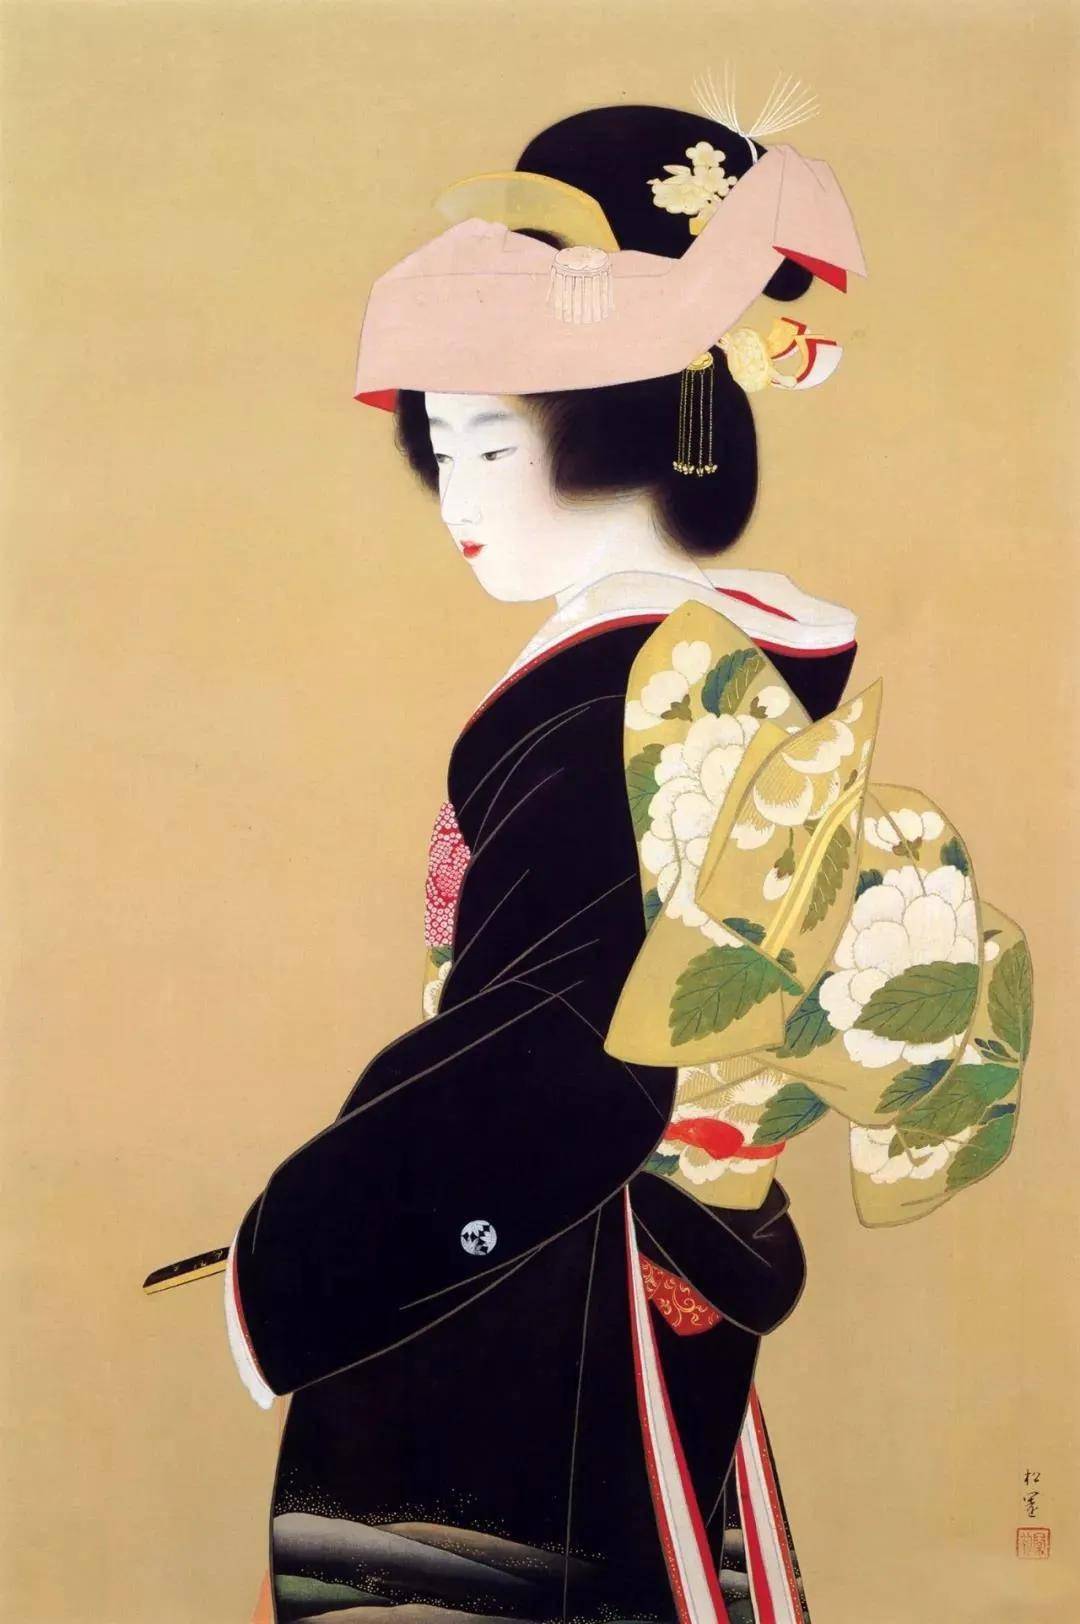 日本美女画,散发着珠玉般的芬芳